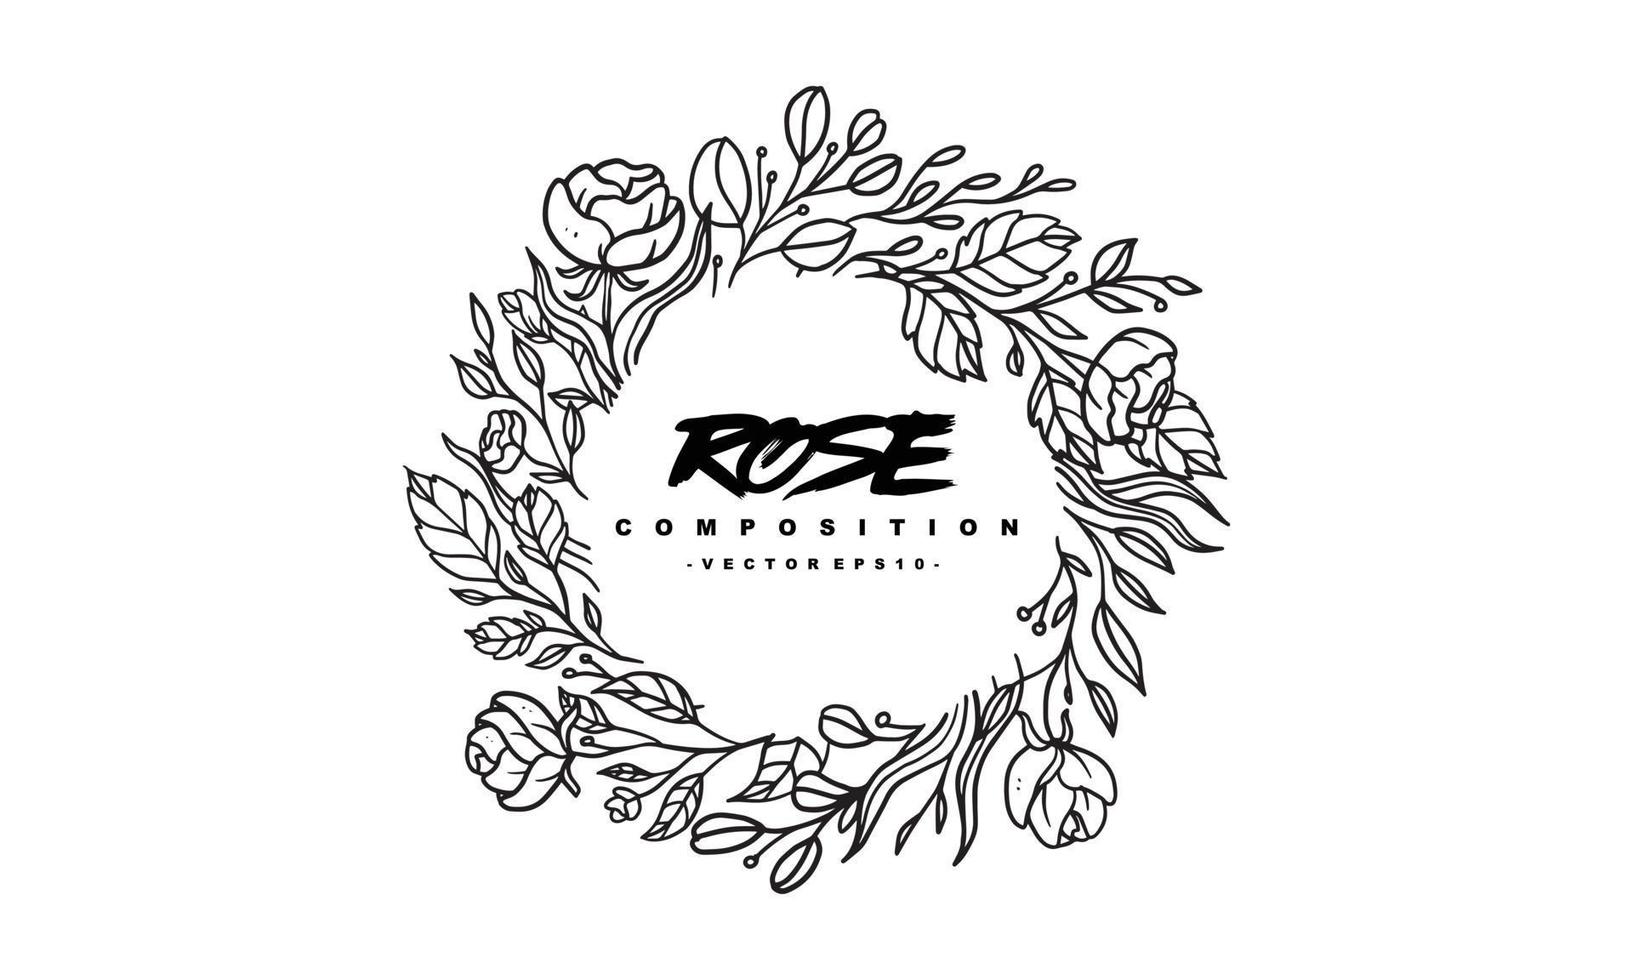 roskompositionsarrangemang för bröllopsinbjudningsdesign, växter och blommor för elegant bokstäver, handritad vektorillustration för romantisk och vintagedesign vektor